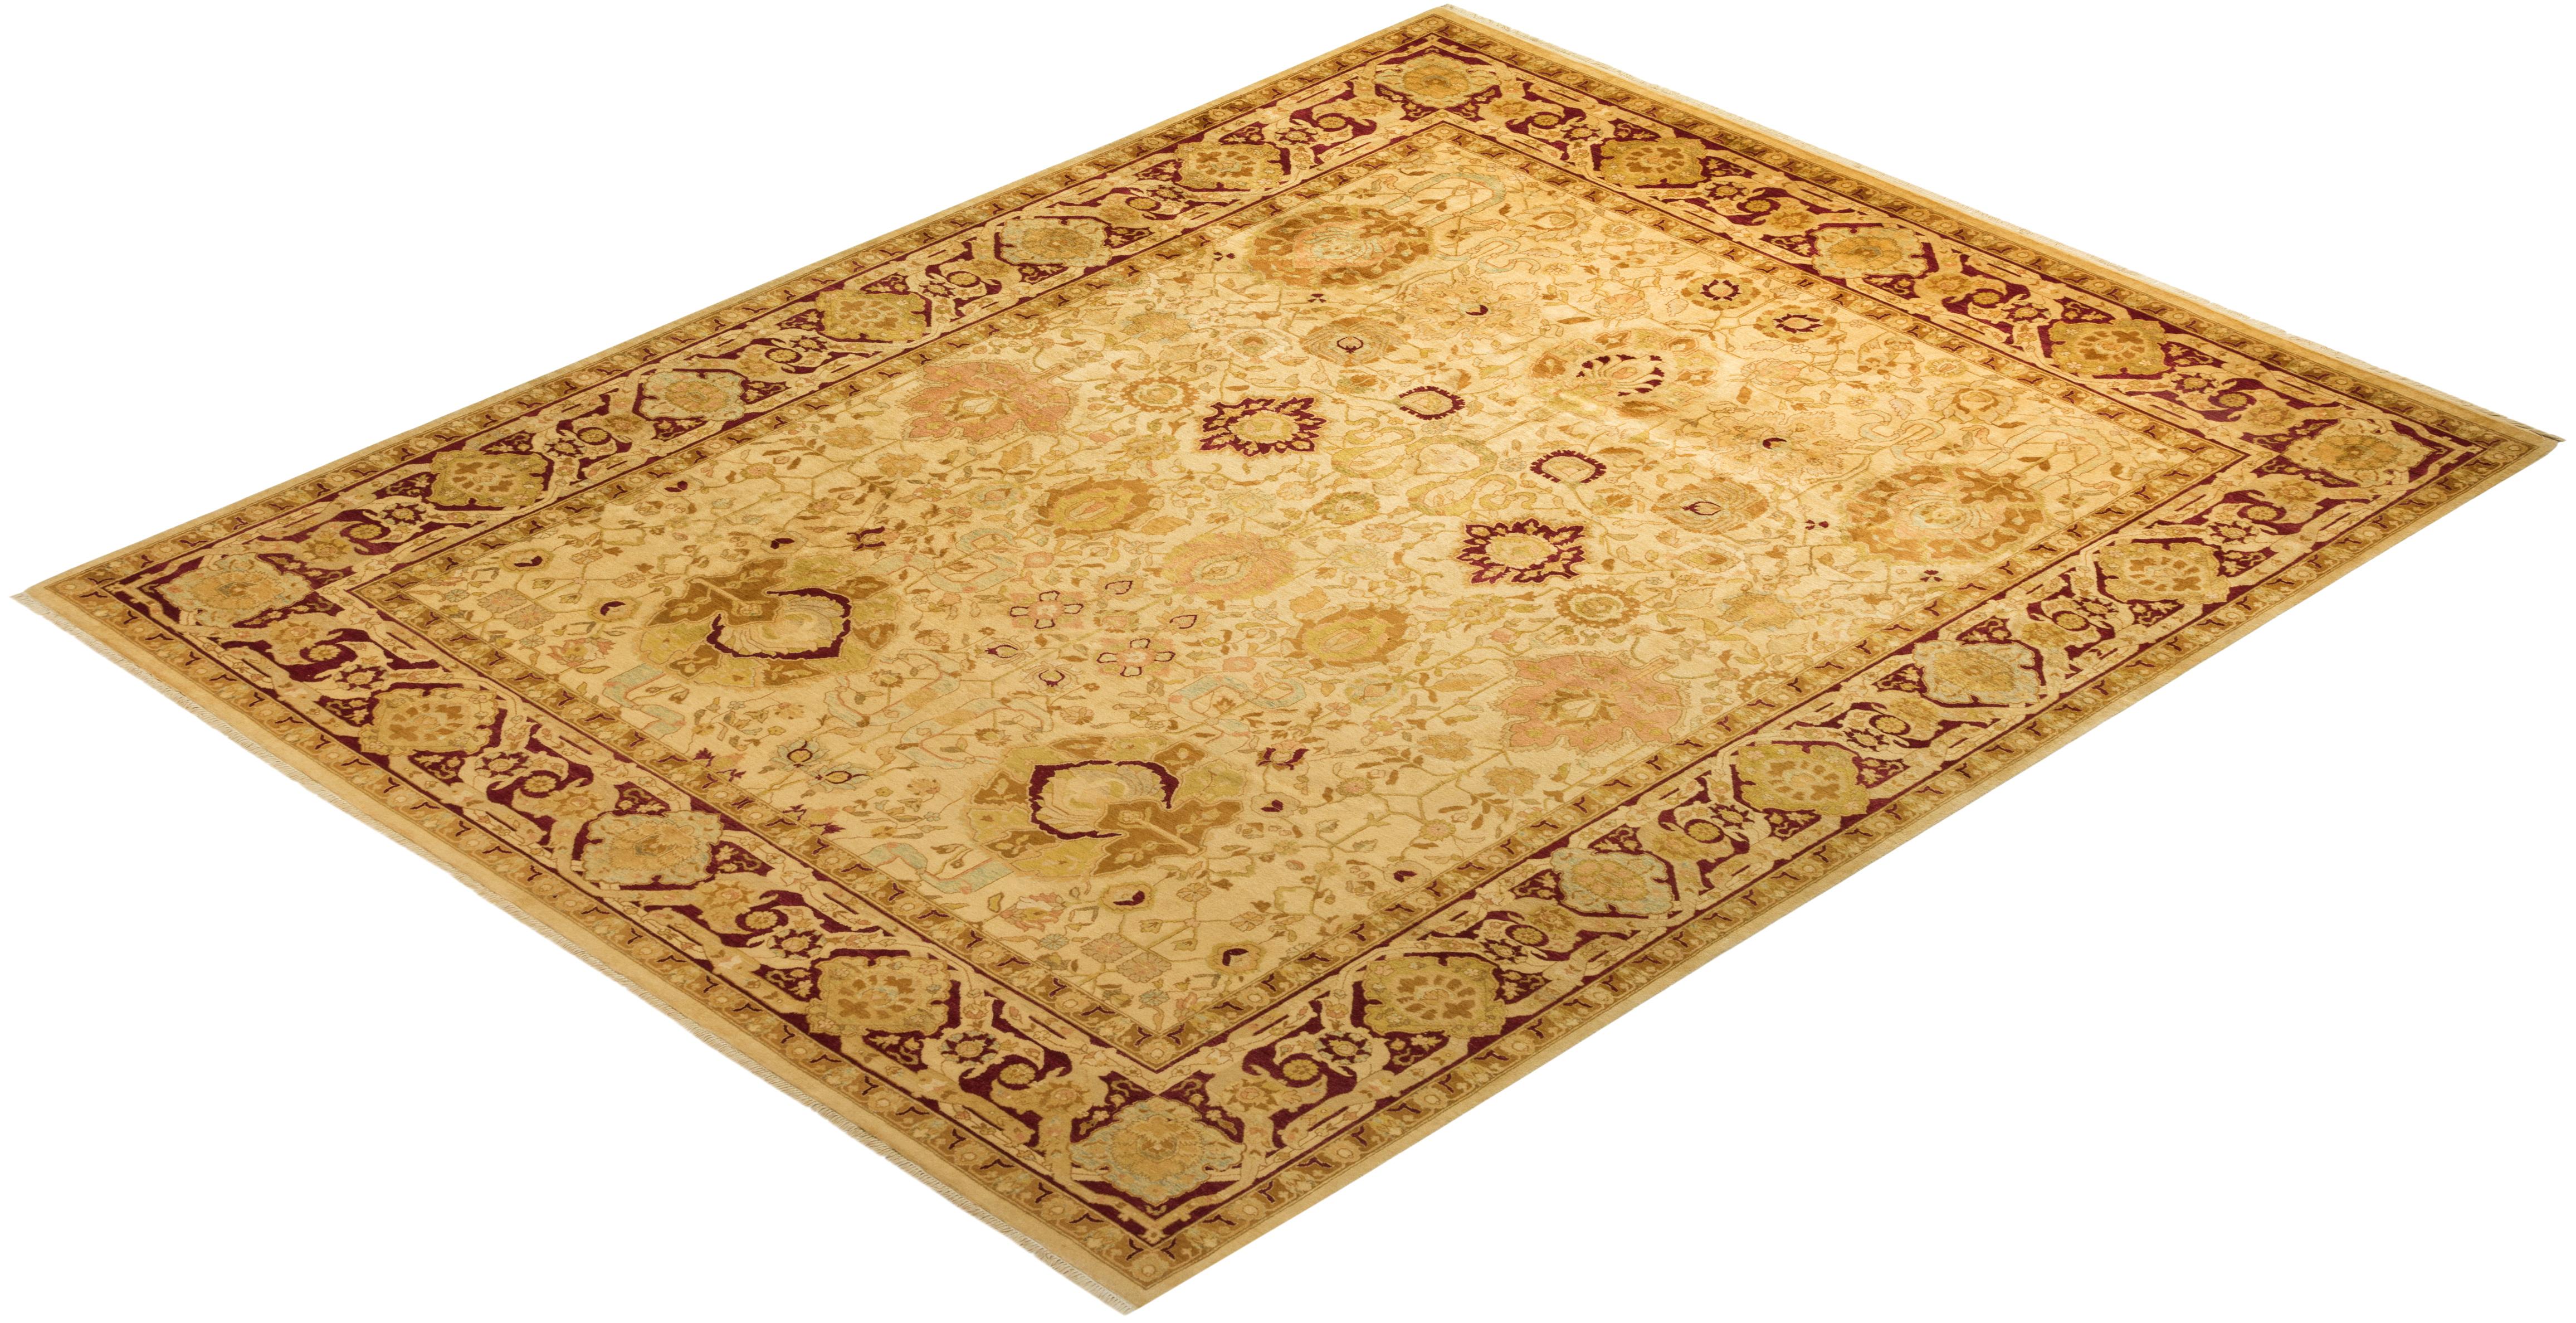 Avec leurs palettes discrètes et leurs motifs à l'envers, les tapis de la collection Mogul apporteront une sophistication intemporelle à n'importe quelle pièce. Influencés par un éventail de motifs turcs, indiens et persans, les artisans qui tissent